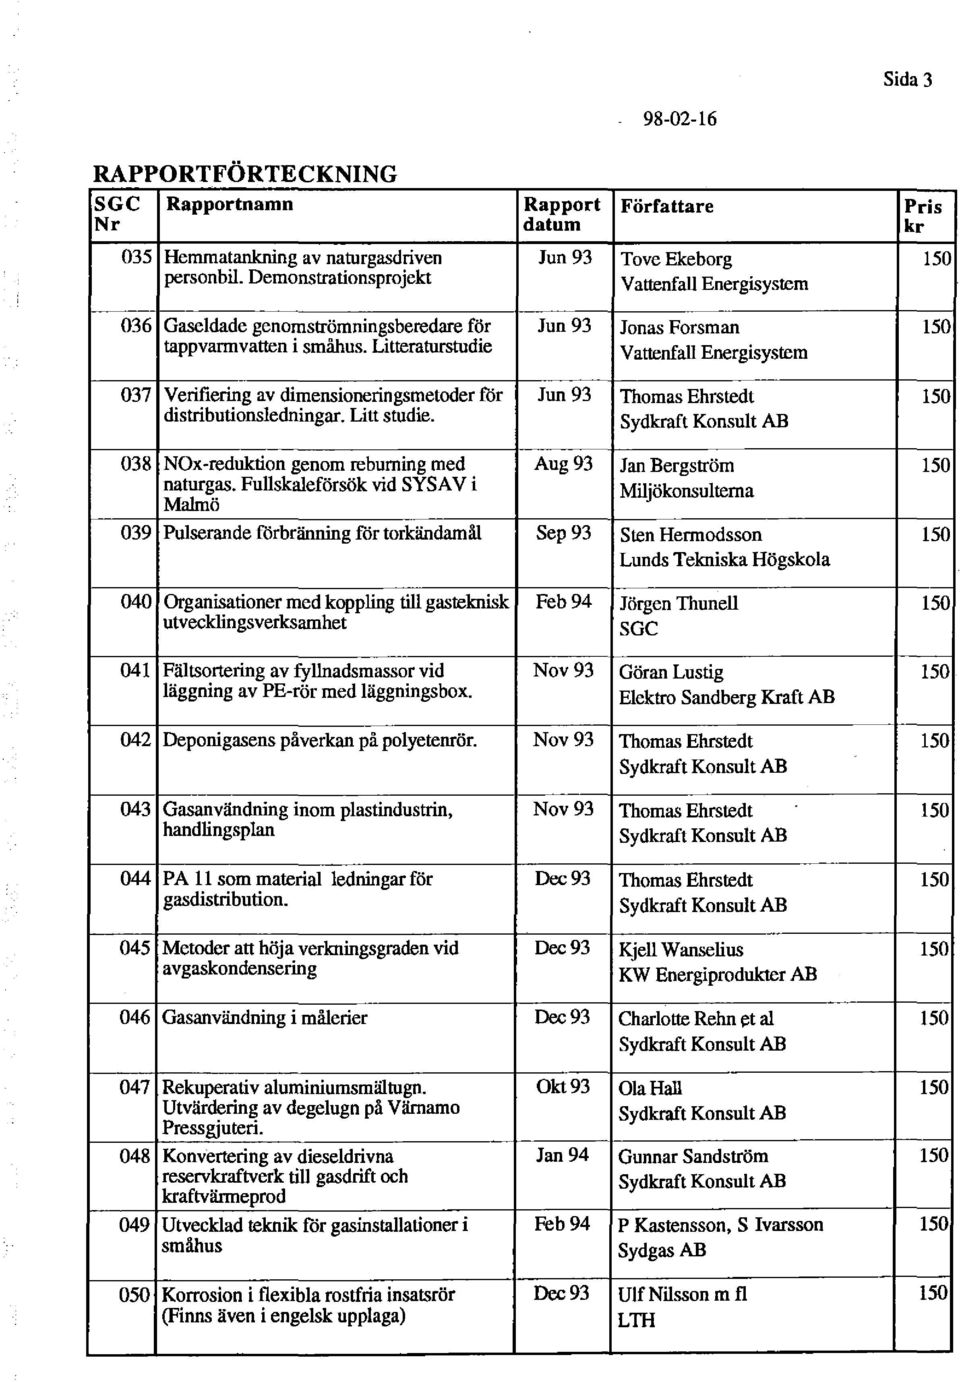 Litteraturstudie Vattenfall Energisystem 037 Verifiering av dimensioneringsmetoder för Jun 93 Thomas Ehrstedt 150 distributionsledningar. Litt studie.